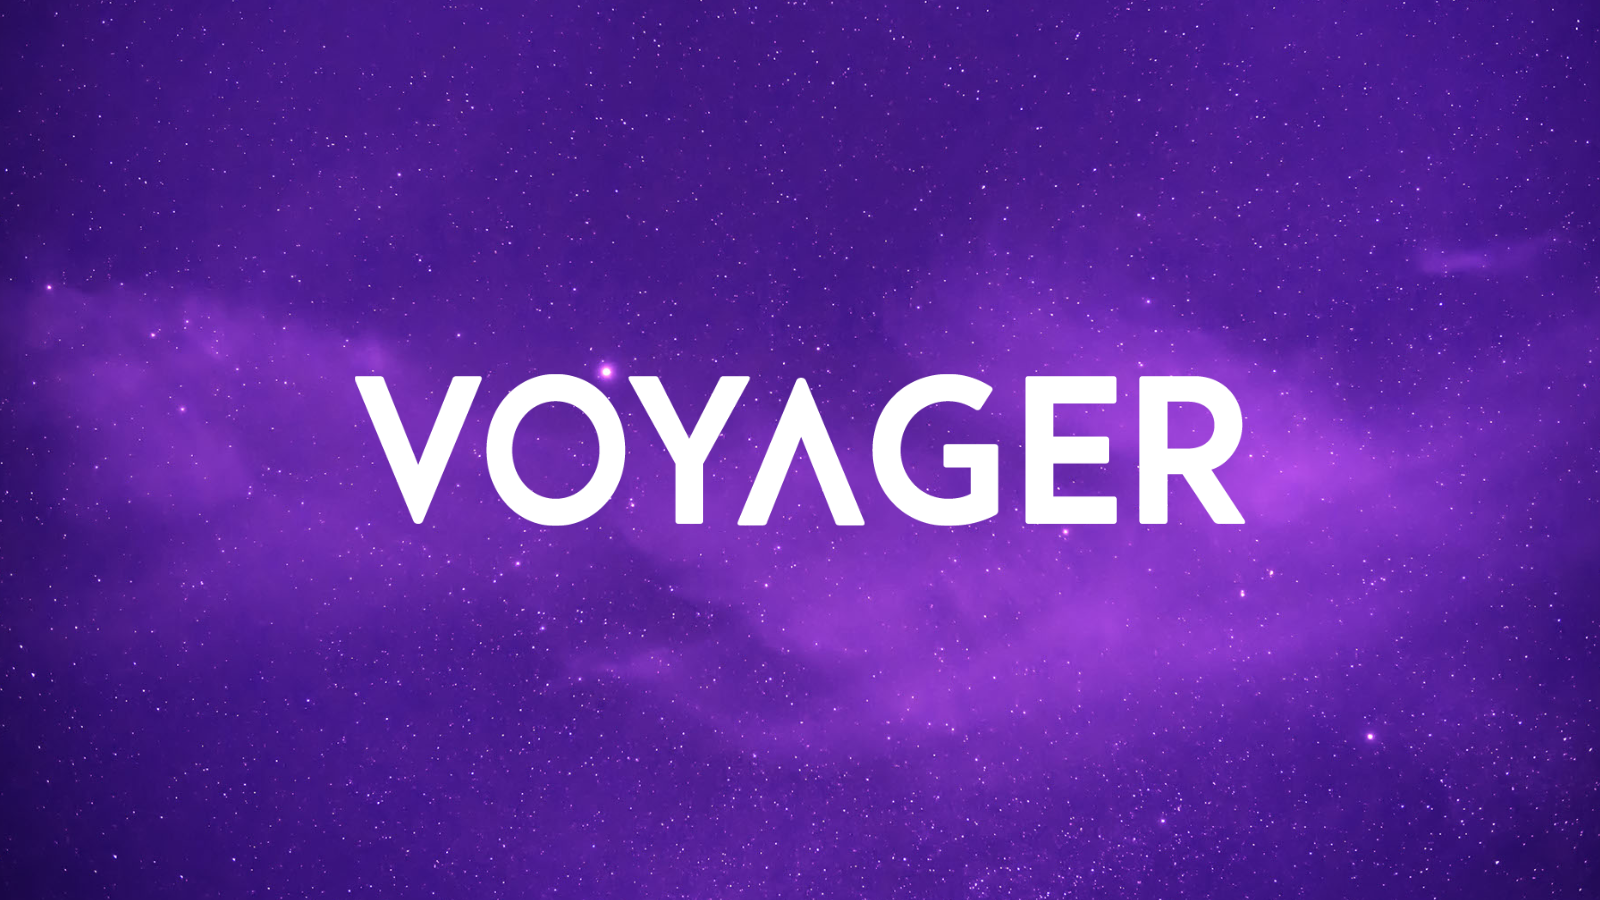 Voyager Digital платформа за крипто кредитиране обяви в сряда че